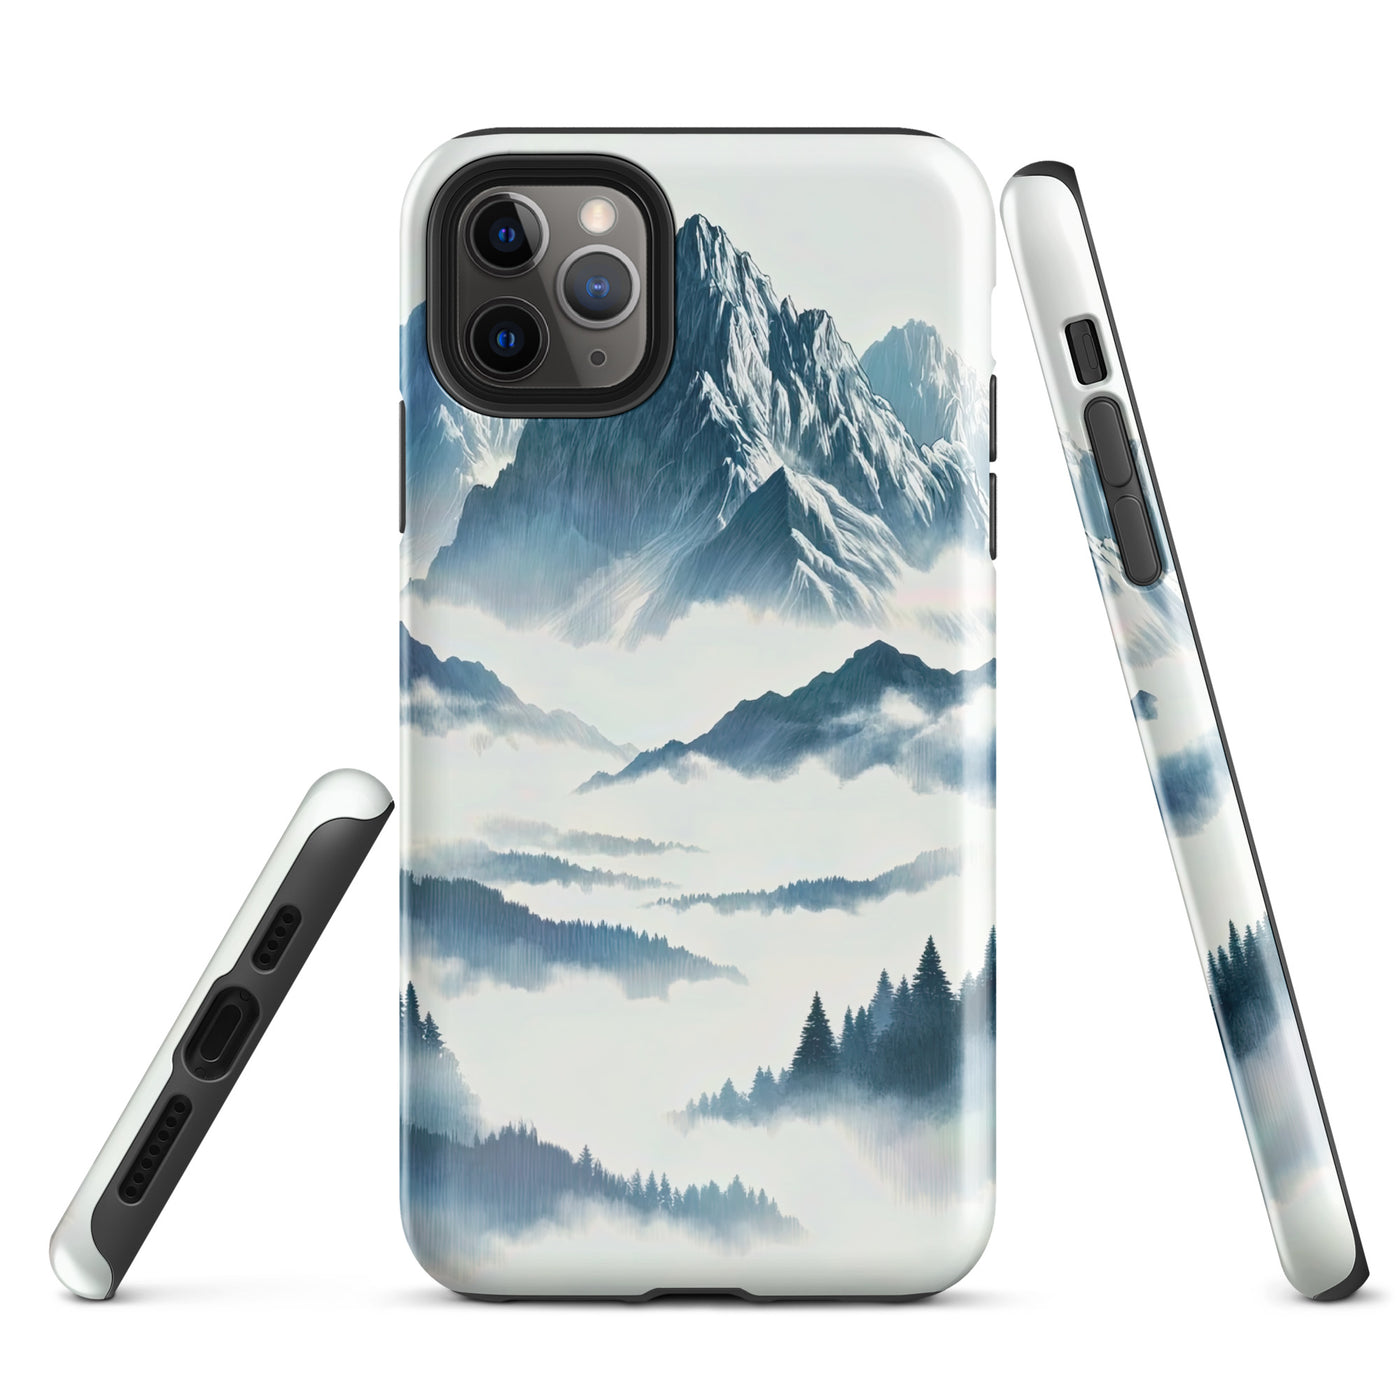 Nebeliger Alpenmorgen-Essenz, verdeckte Täler und Wälder - iPhone Schutzhülle (robust) berge xxx yyy zzz iPhone 11 Pro Max